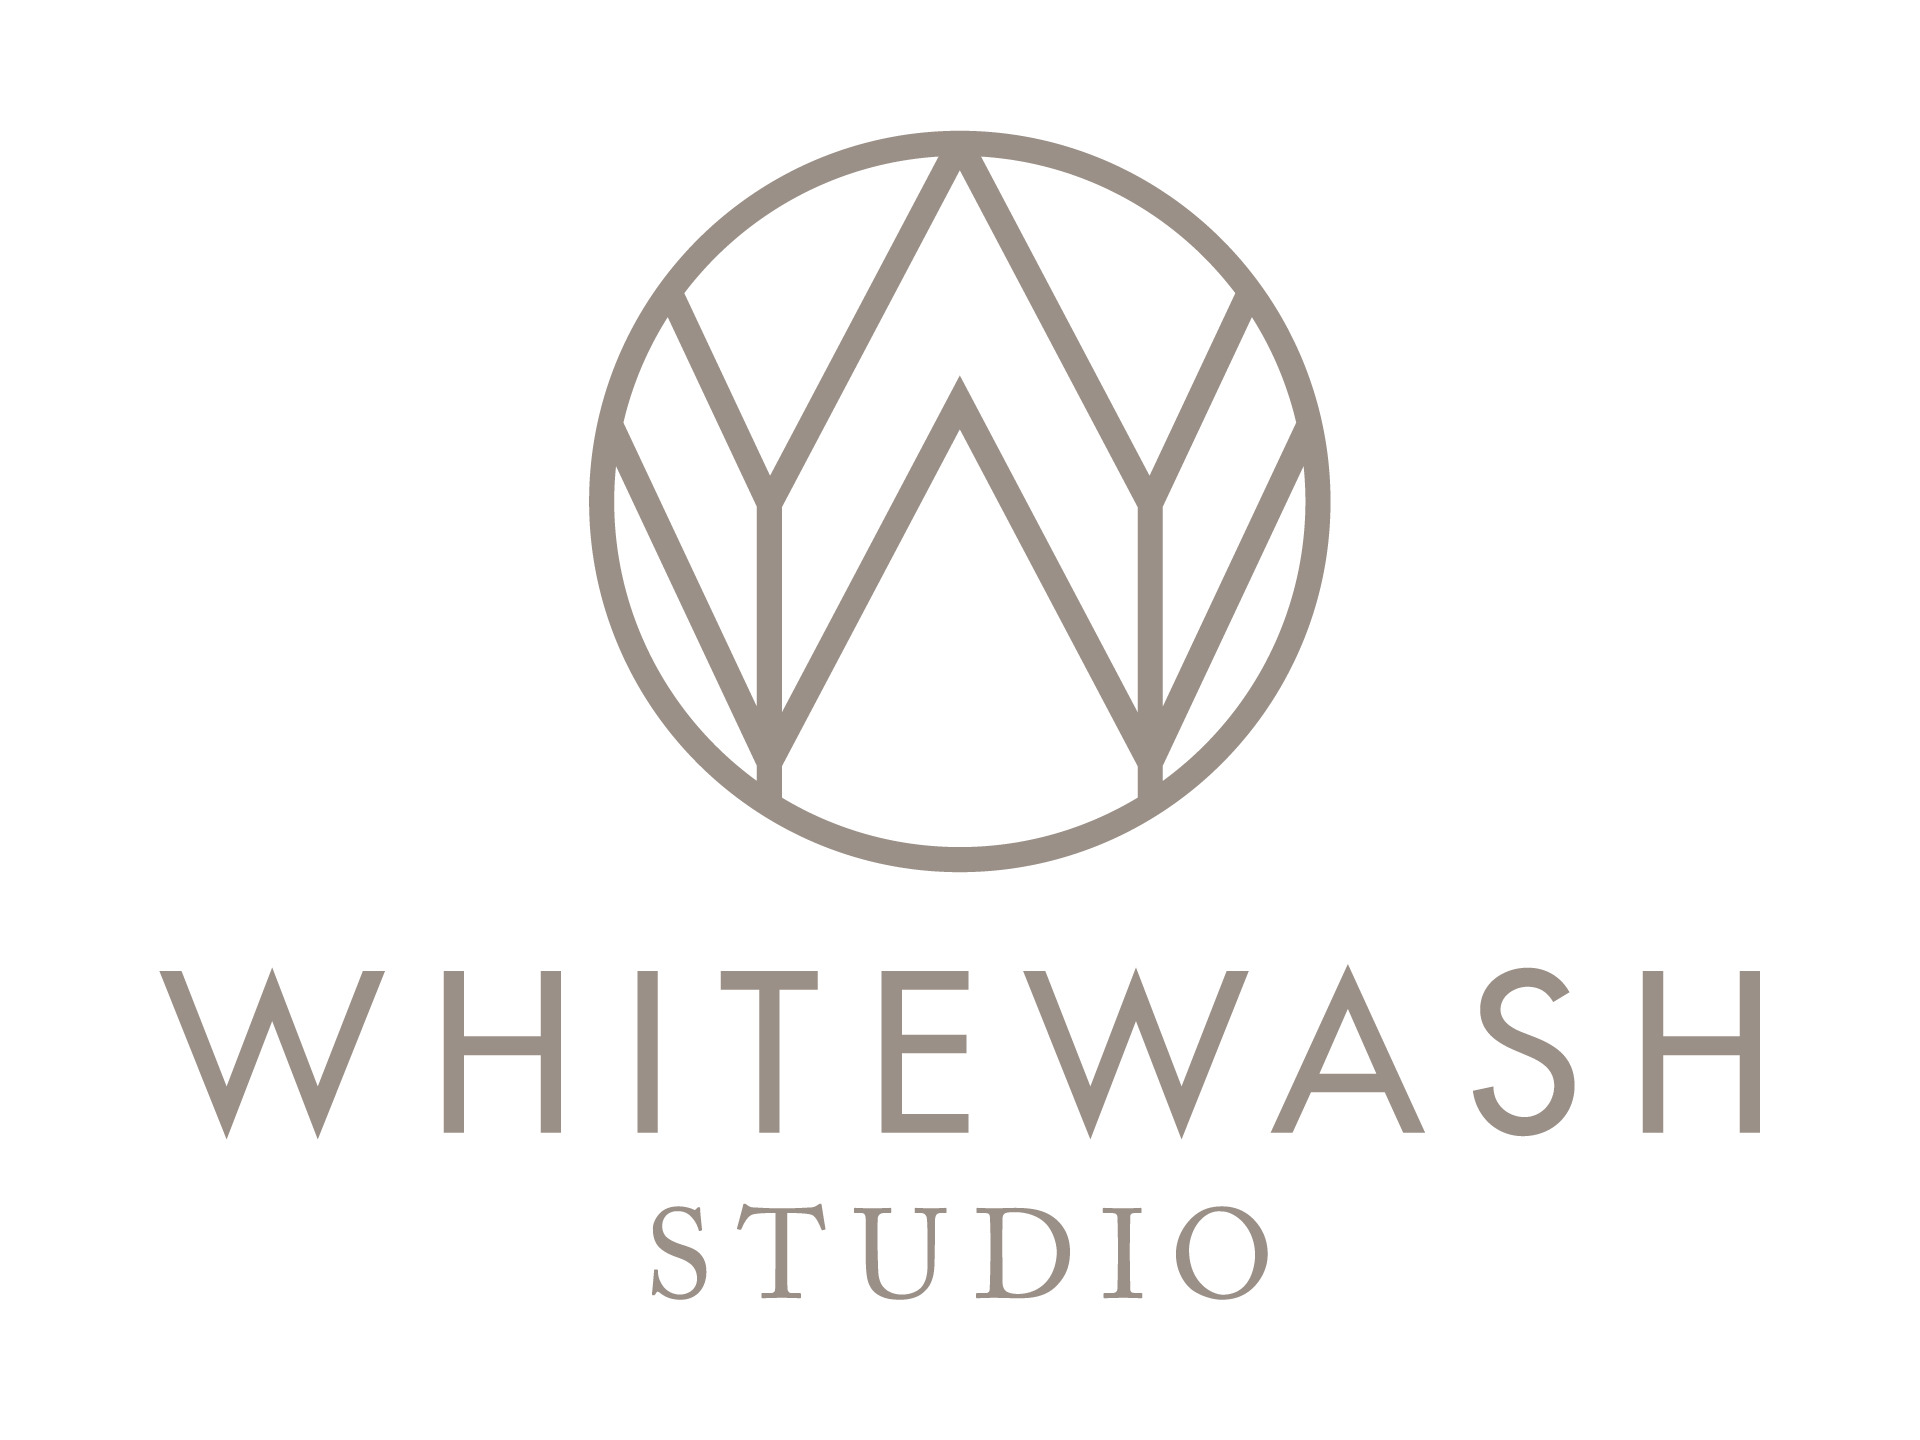 Whitewash Studio Branding